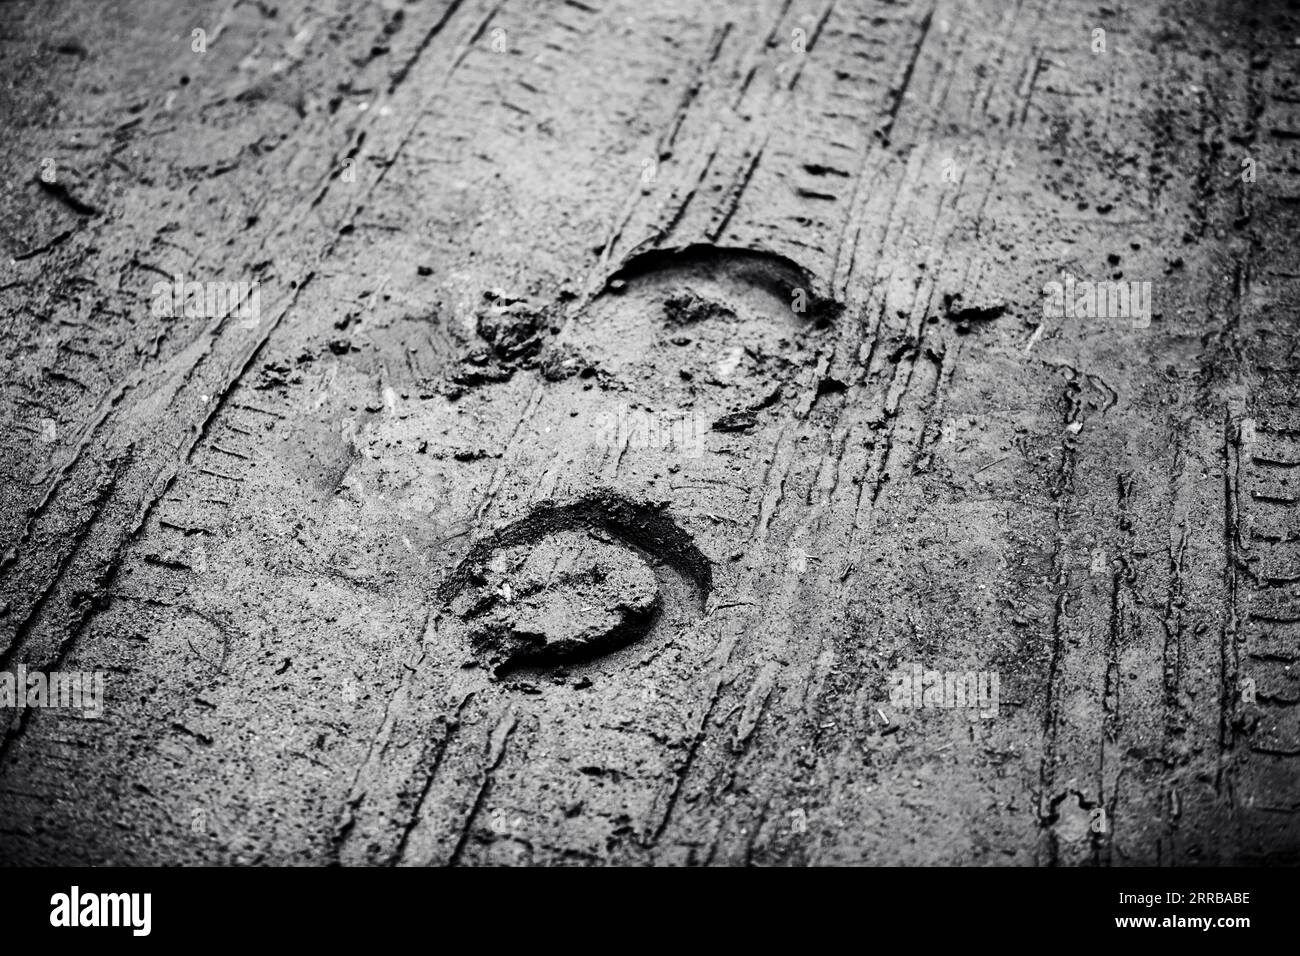 Das schwarz-weiße Foto zeigt die Spuren von Pferdehufen und Hufeisen auf einer nassen Landstraße, die zuvor von Automobilen befahren wurde. Nostalgie. Traditi Stockfoto